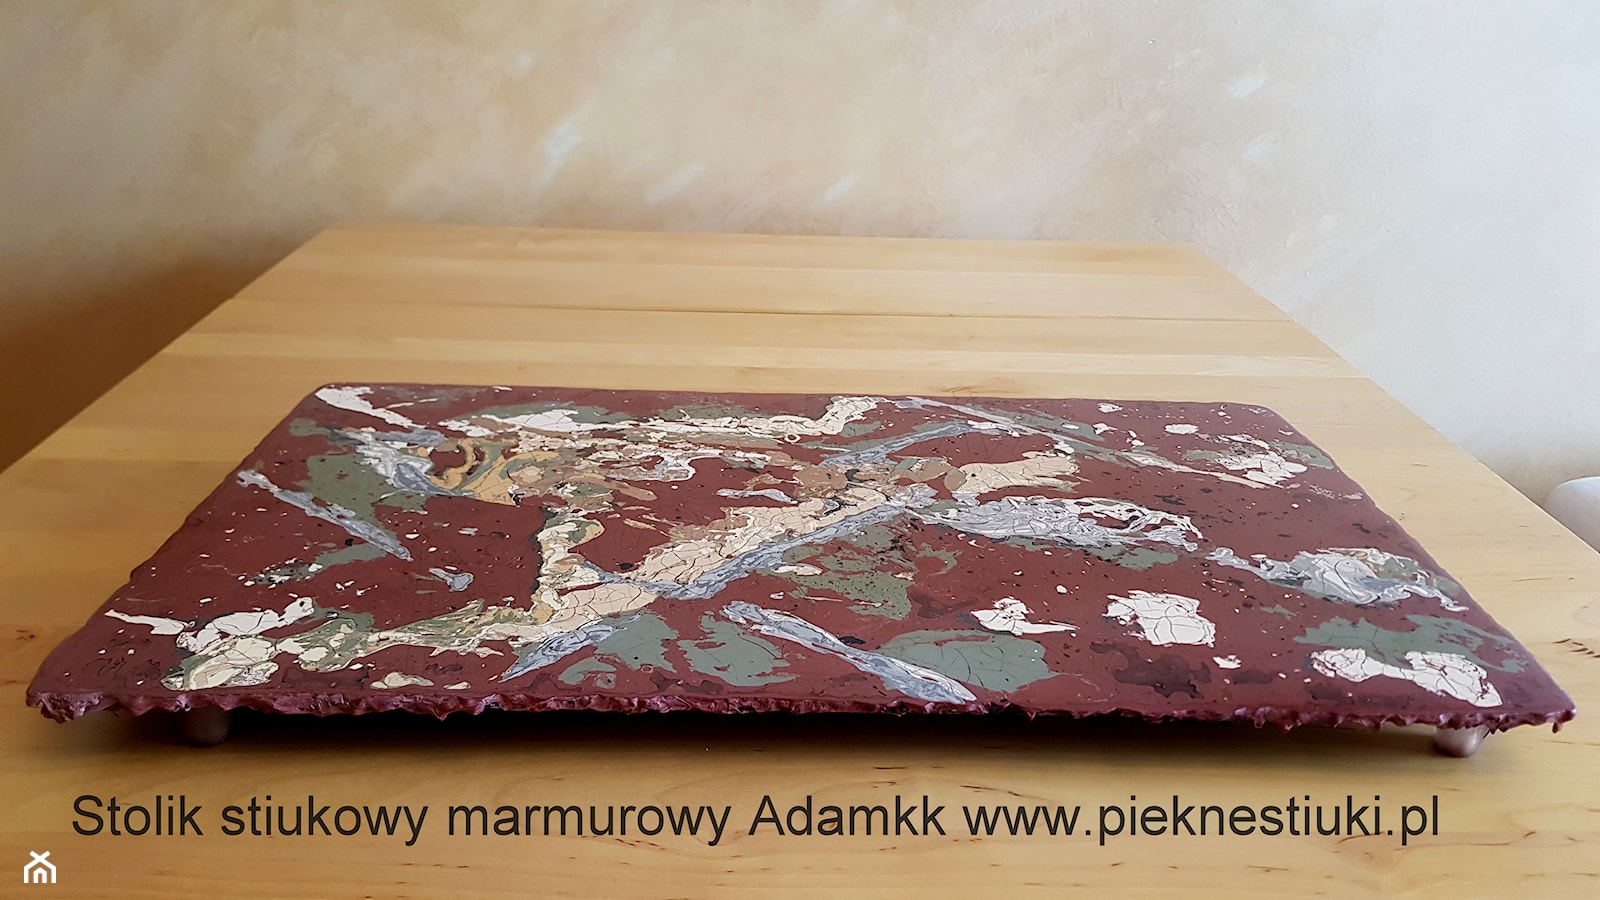 Stolik stiukowy marmurowy.Adamkk - zdjęcie od Stiuki marmurowe,porcelanowe i alabastrowe -luksusowe tynki szlachetne!!! Adamkk Stucco Marmo (Pieknestiuki.pl) - Homebook